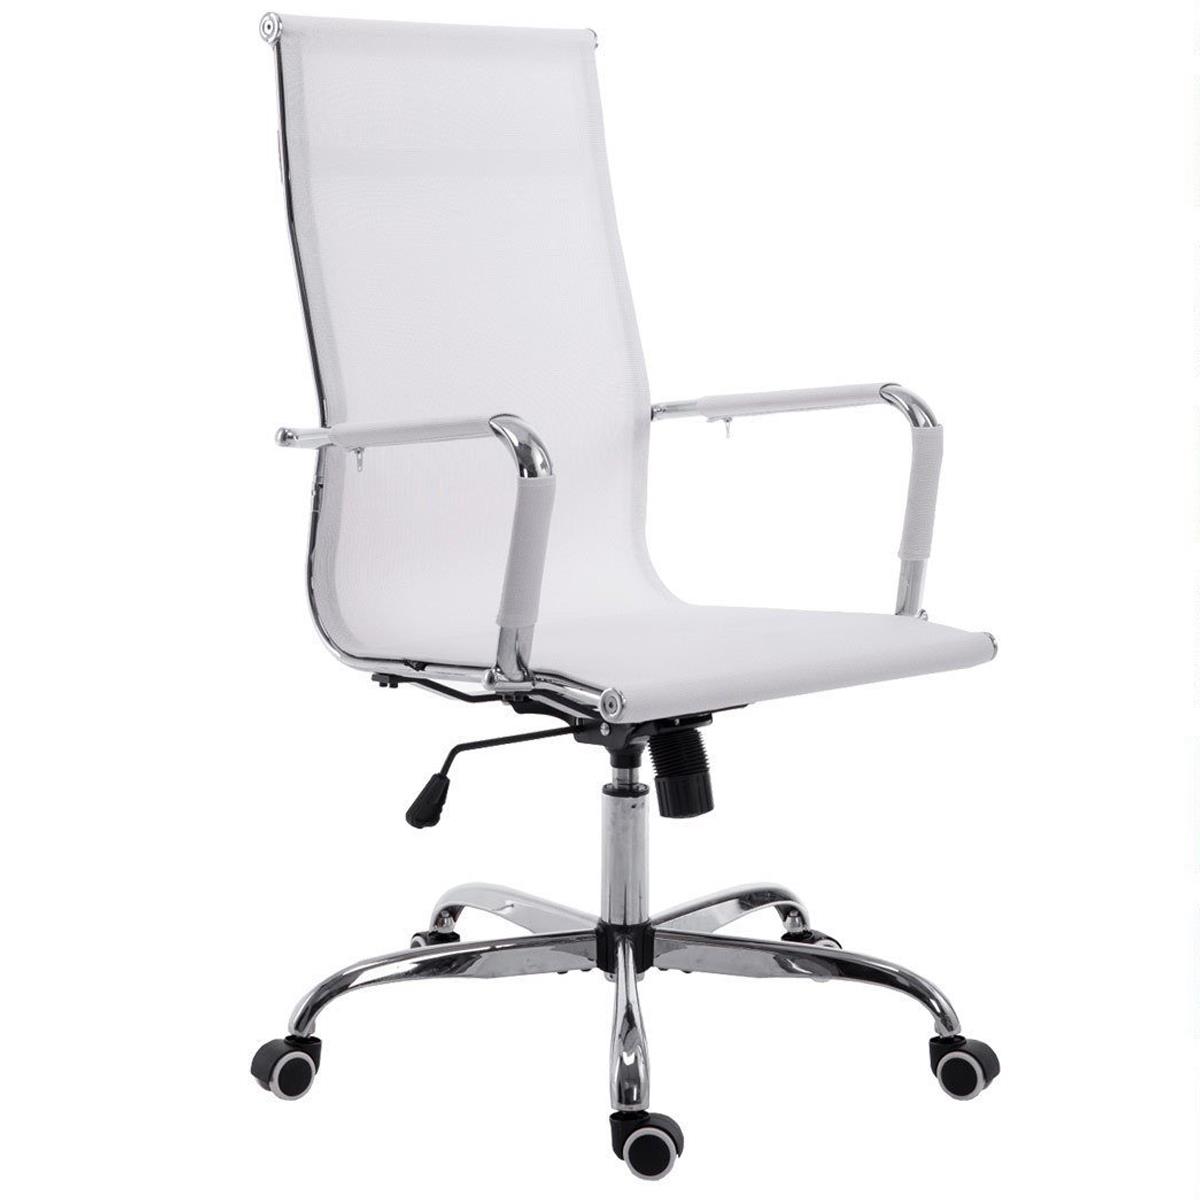 Chaise de bureau ITALIE, Structure Métallique, Magnifique Design en Maille Respirable, Blanc